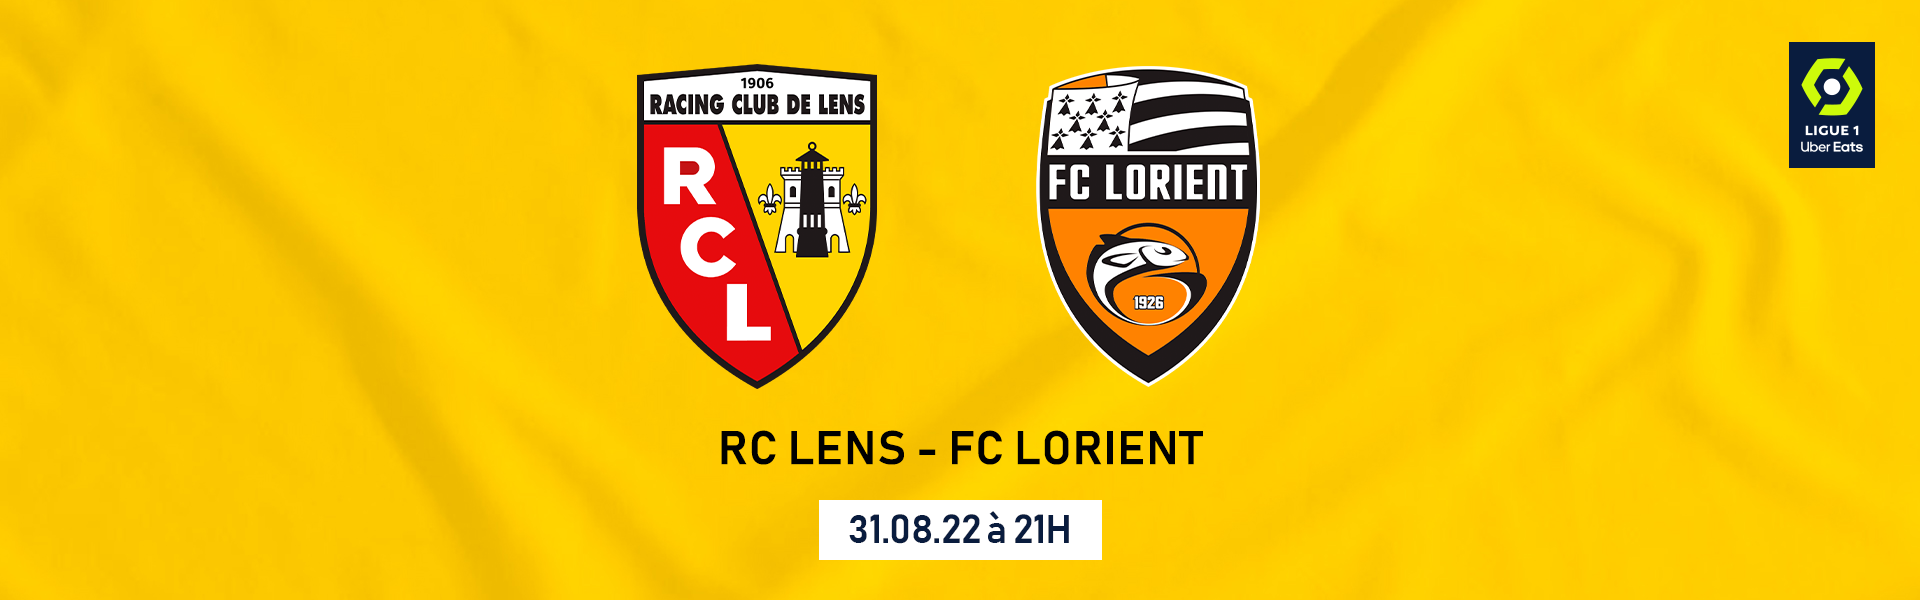 RC LENS / FC LORIENT